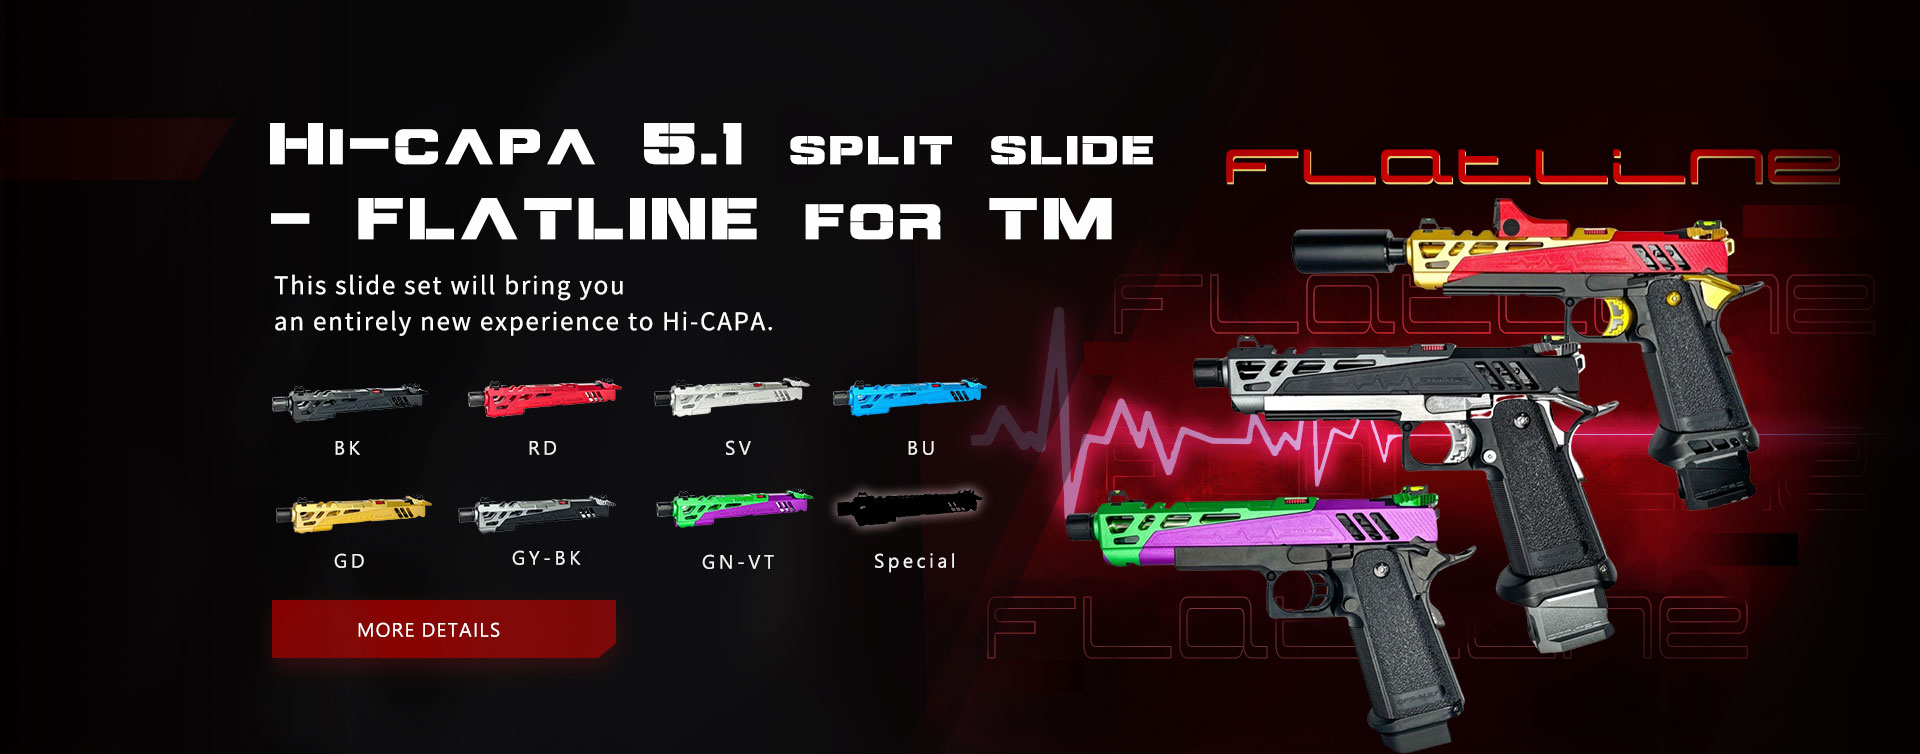 Hi-capa 5.1 split slide - FLATLINE for TM